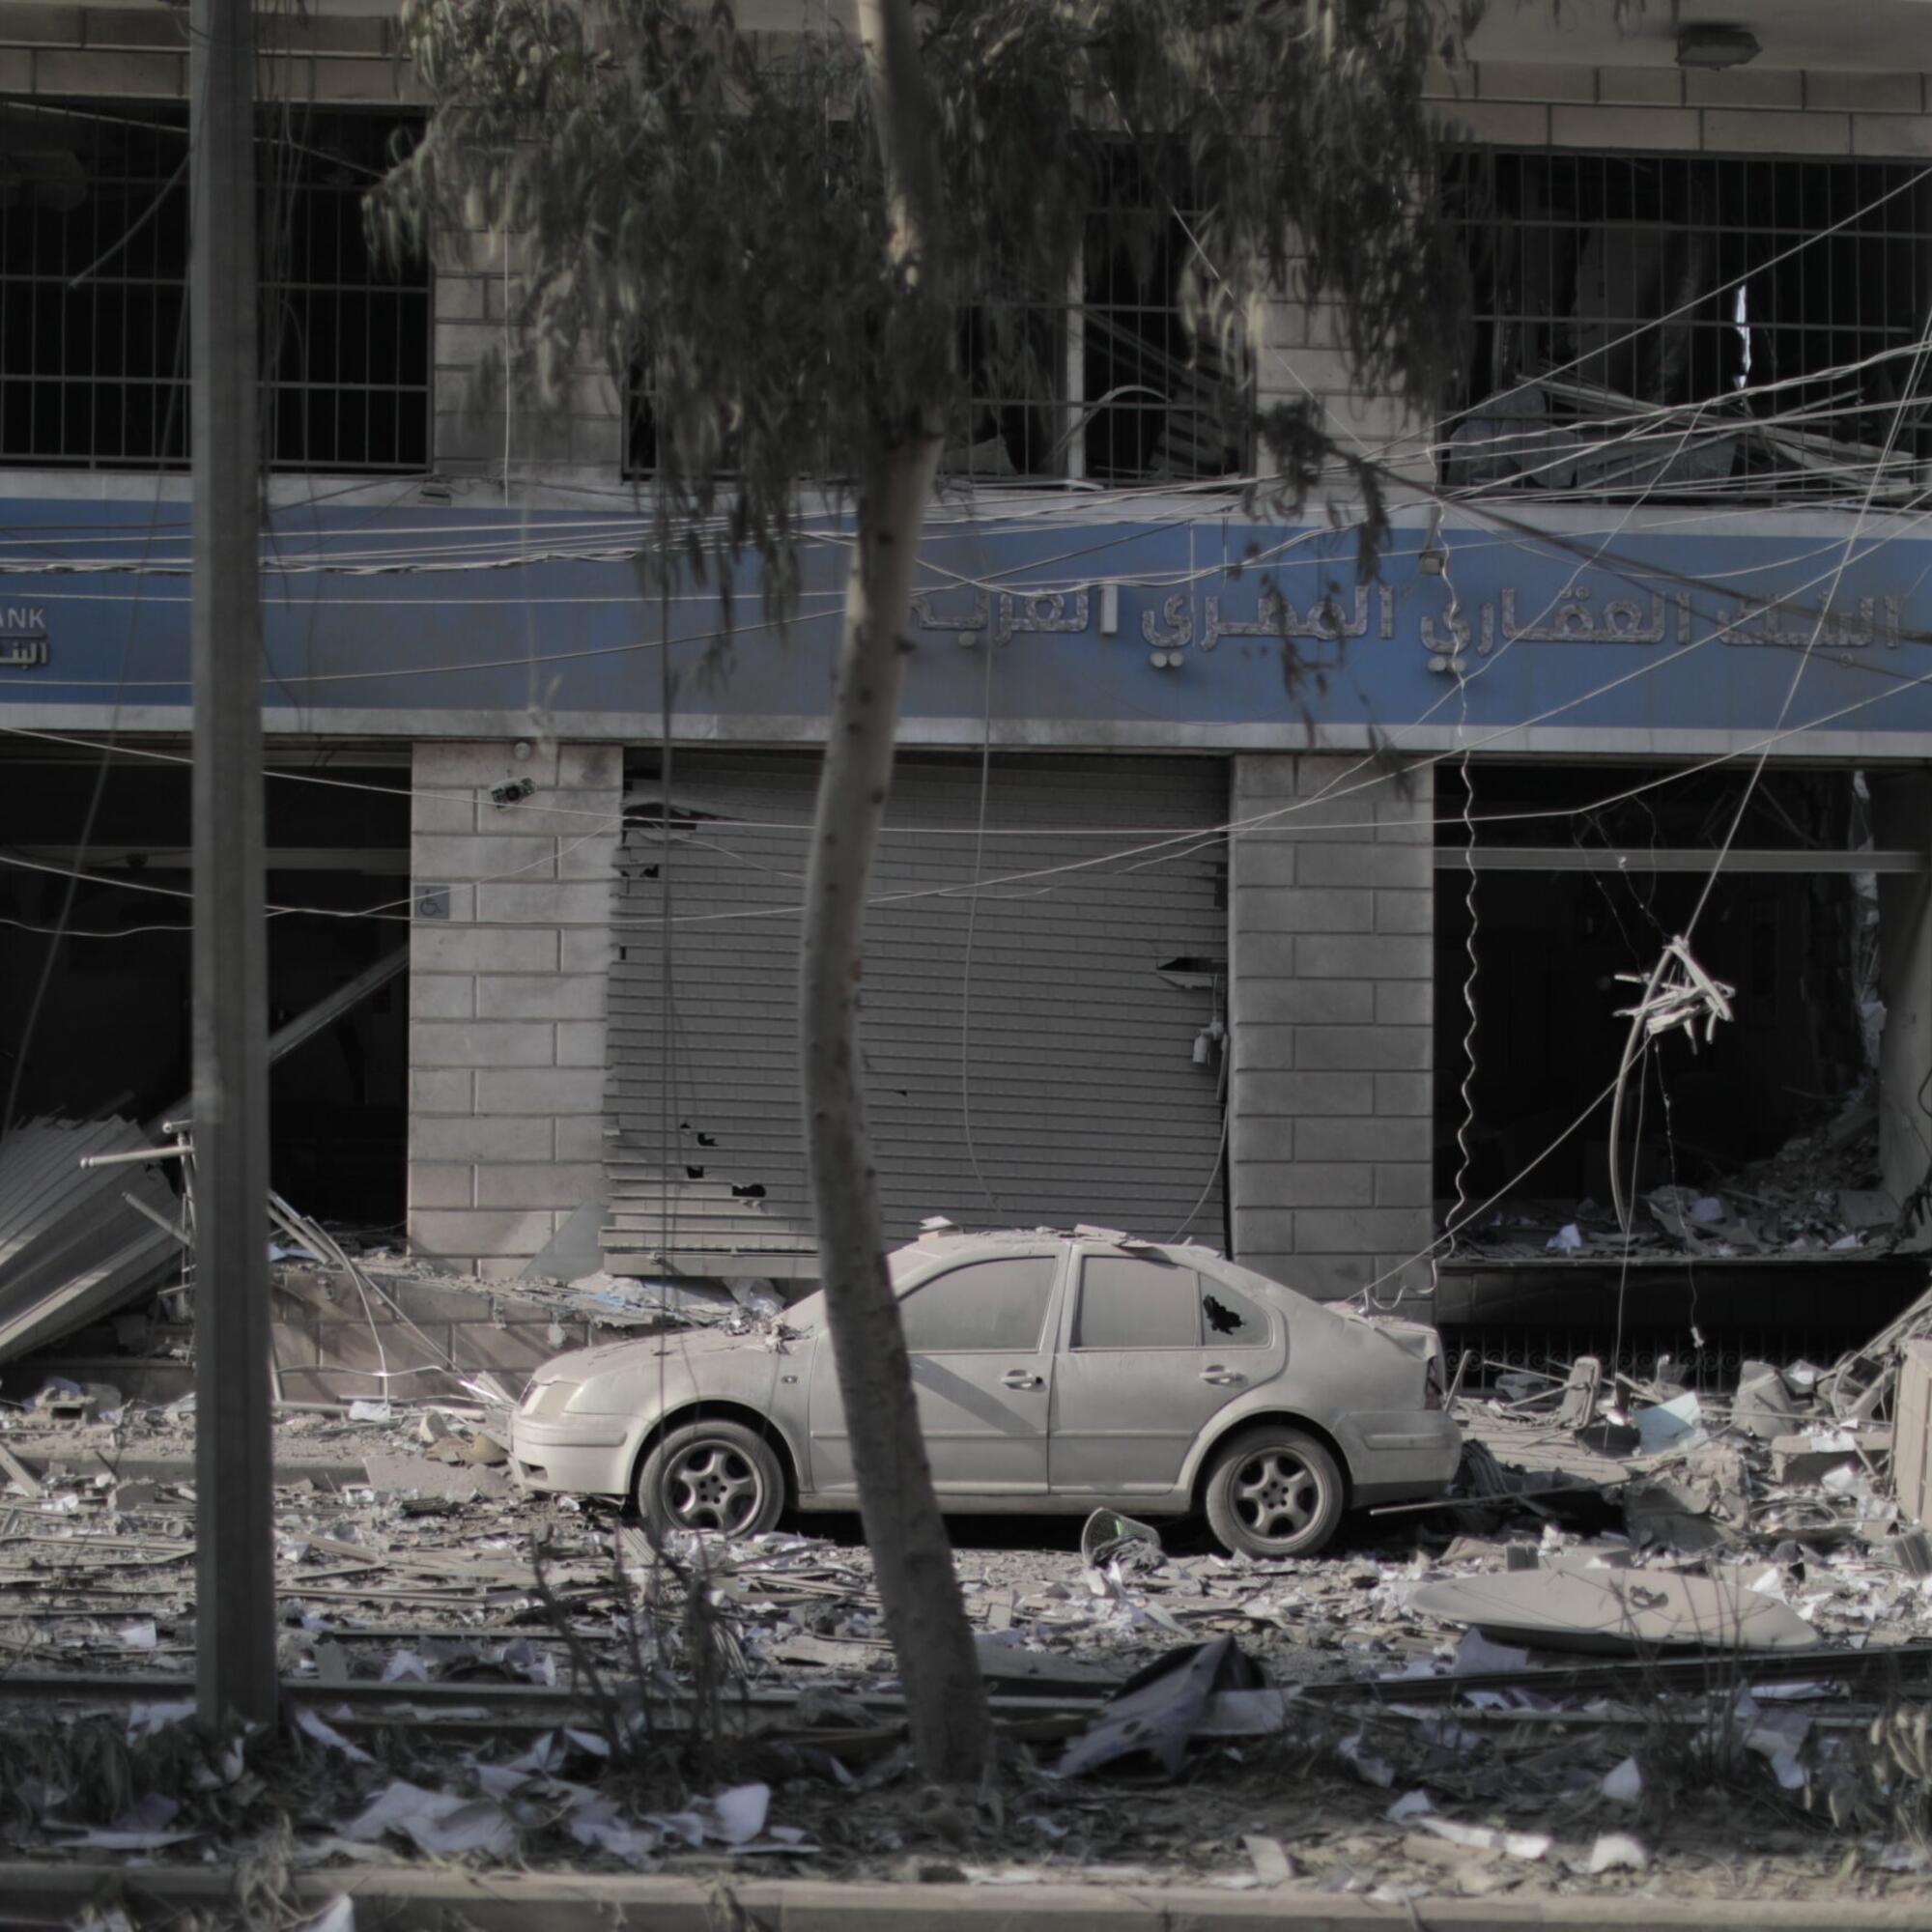 Instalaciones de la UNRWA bombardeadas por fuerzas israelíes en Rafah. / Foto: UNRWA